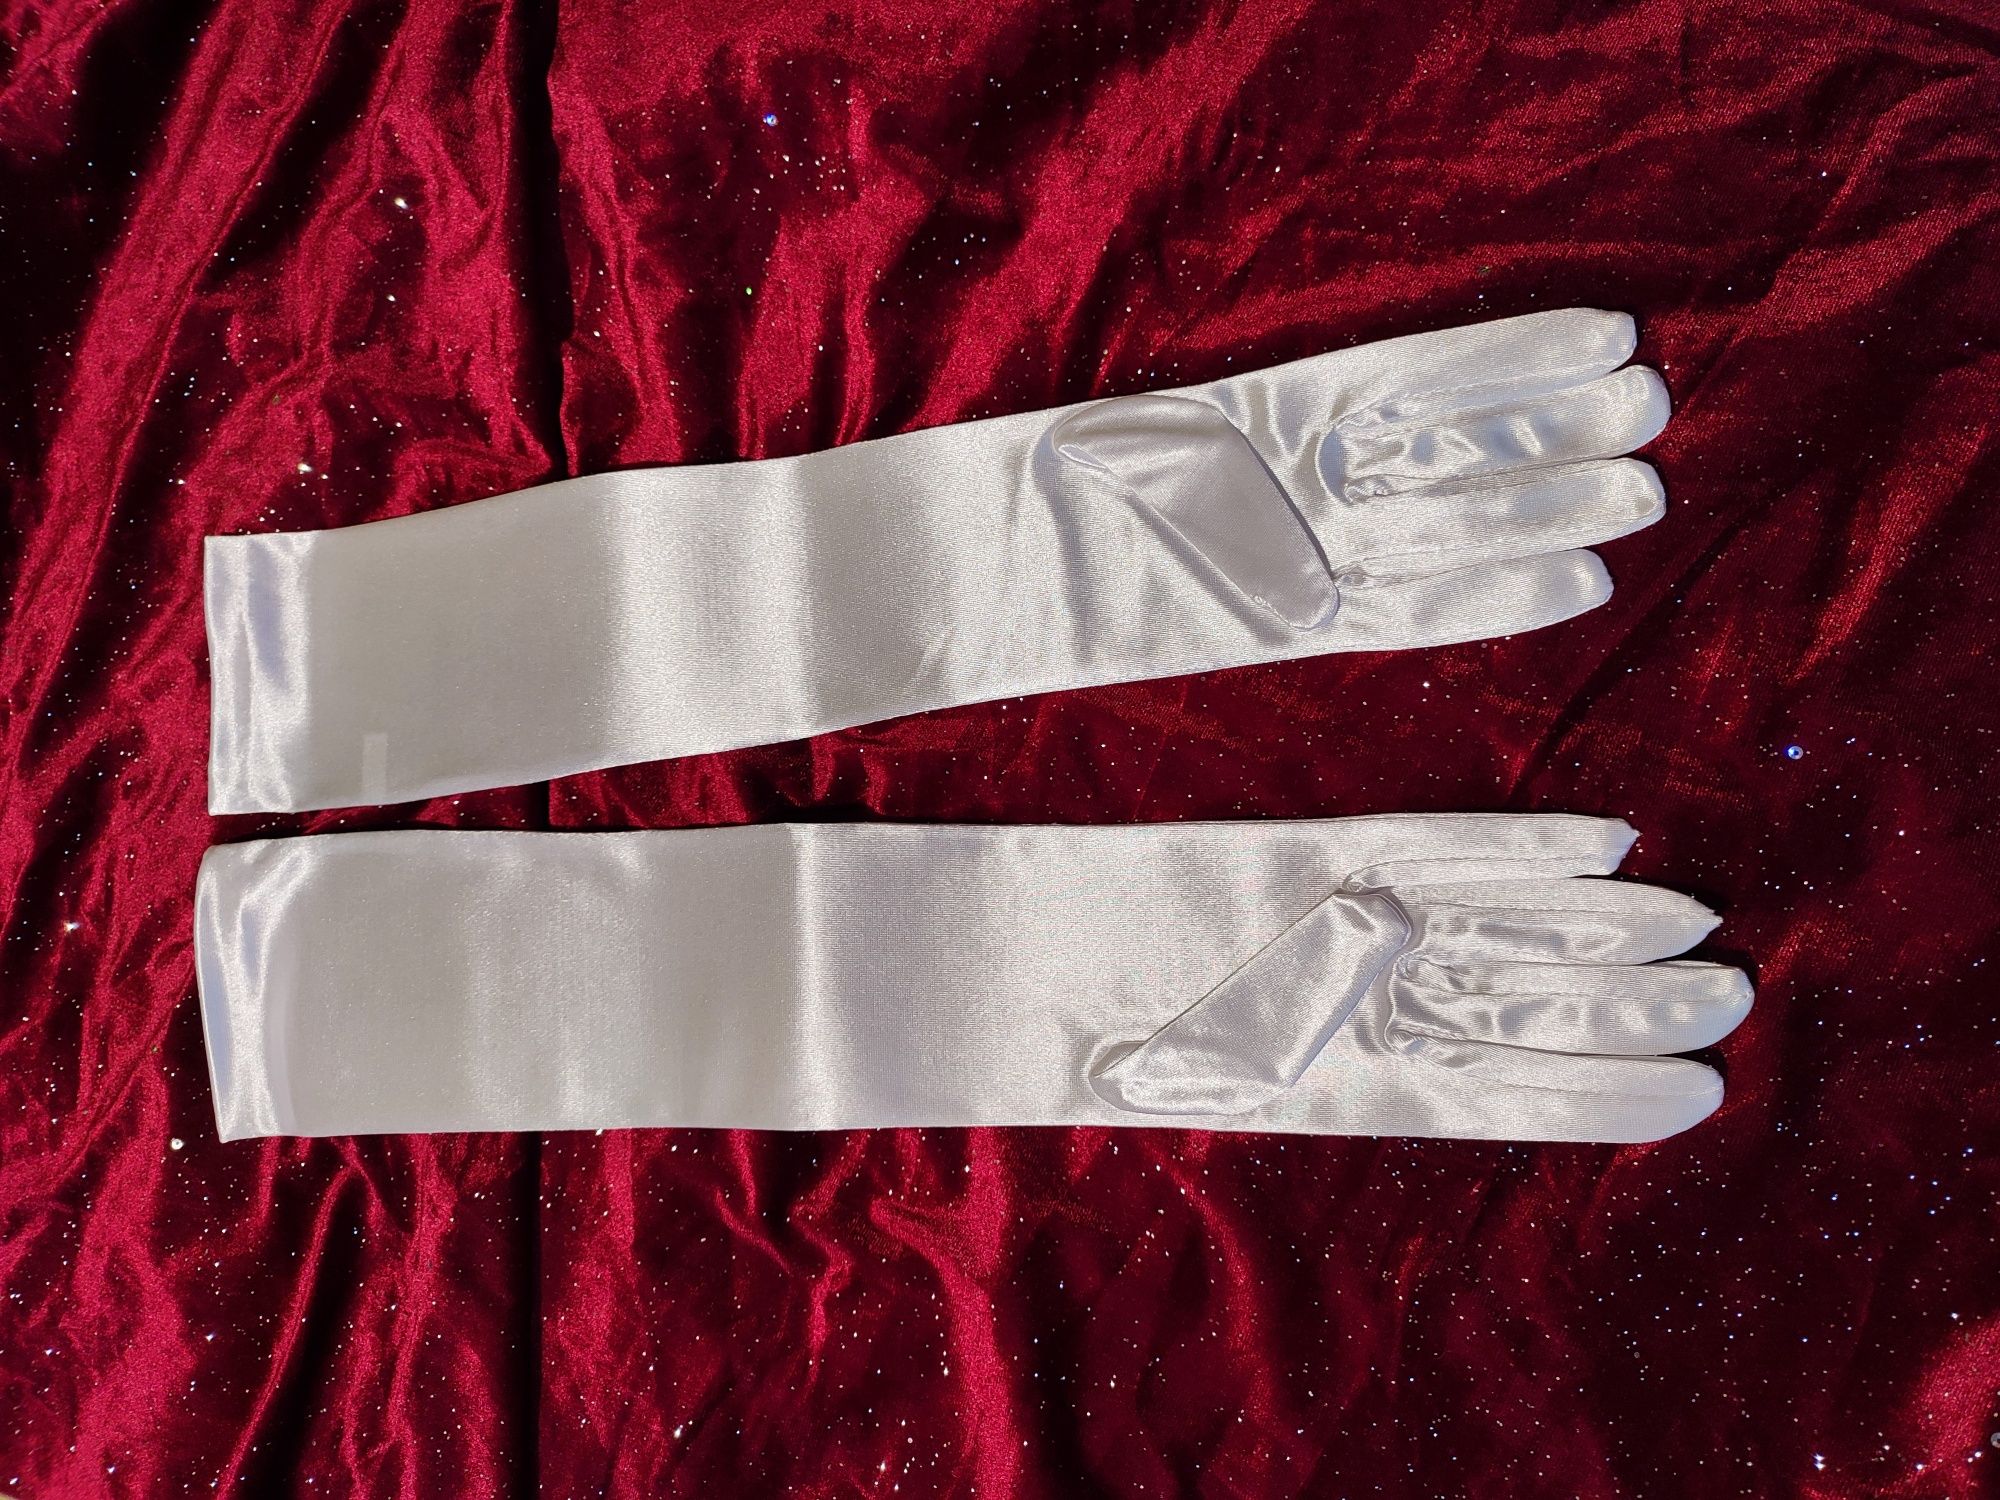 Rękawice długie damskie białe ślubne w stylu retro Gatsby przebranie s